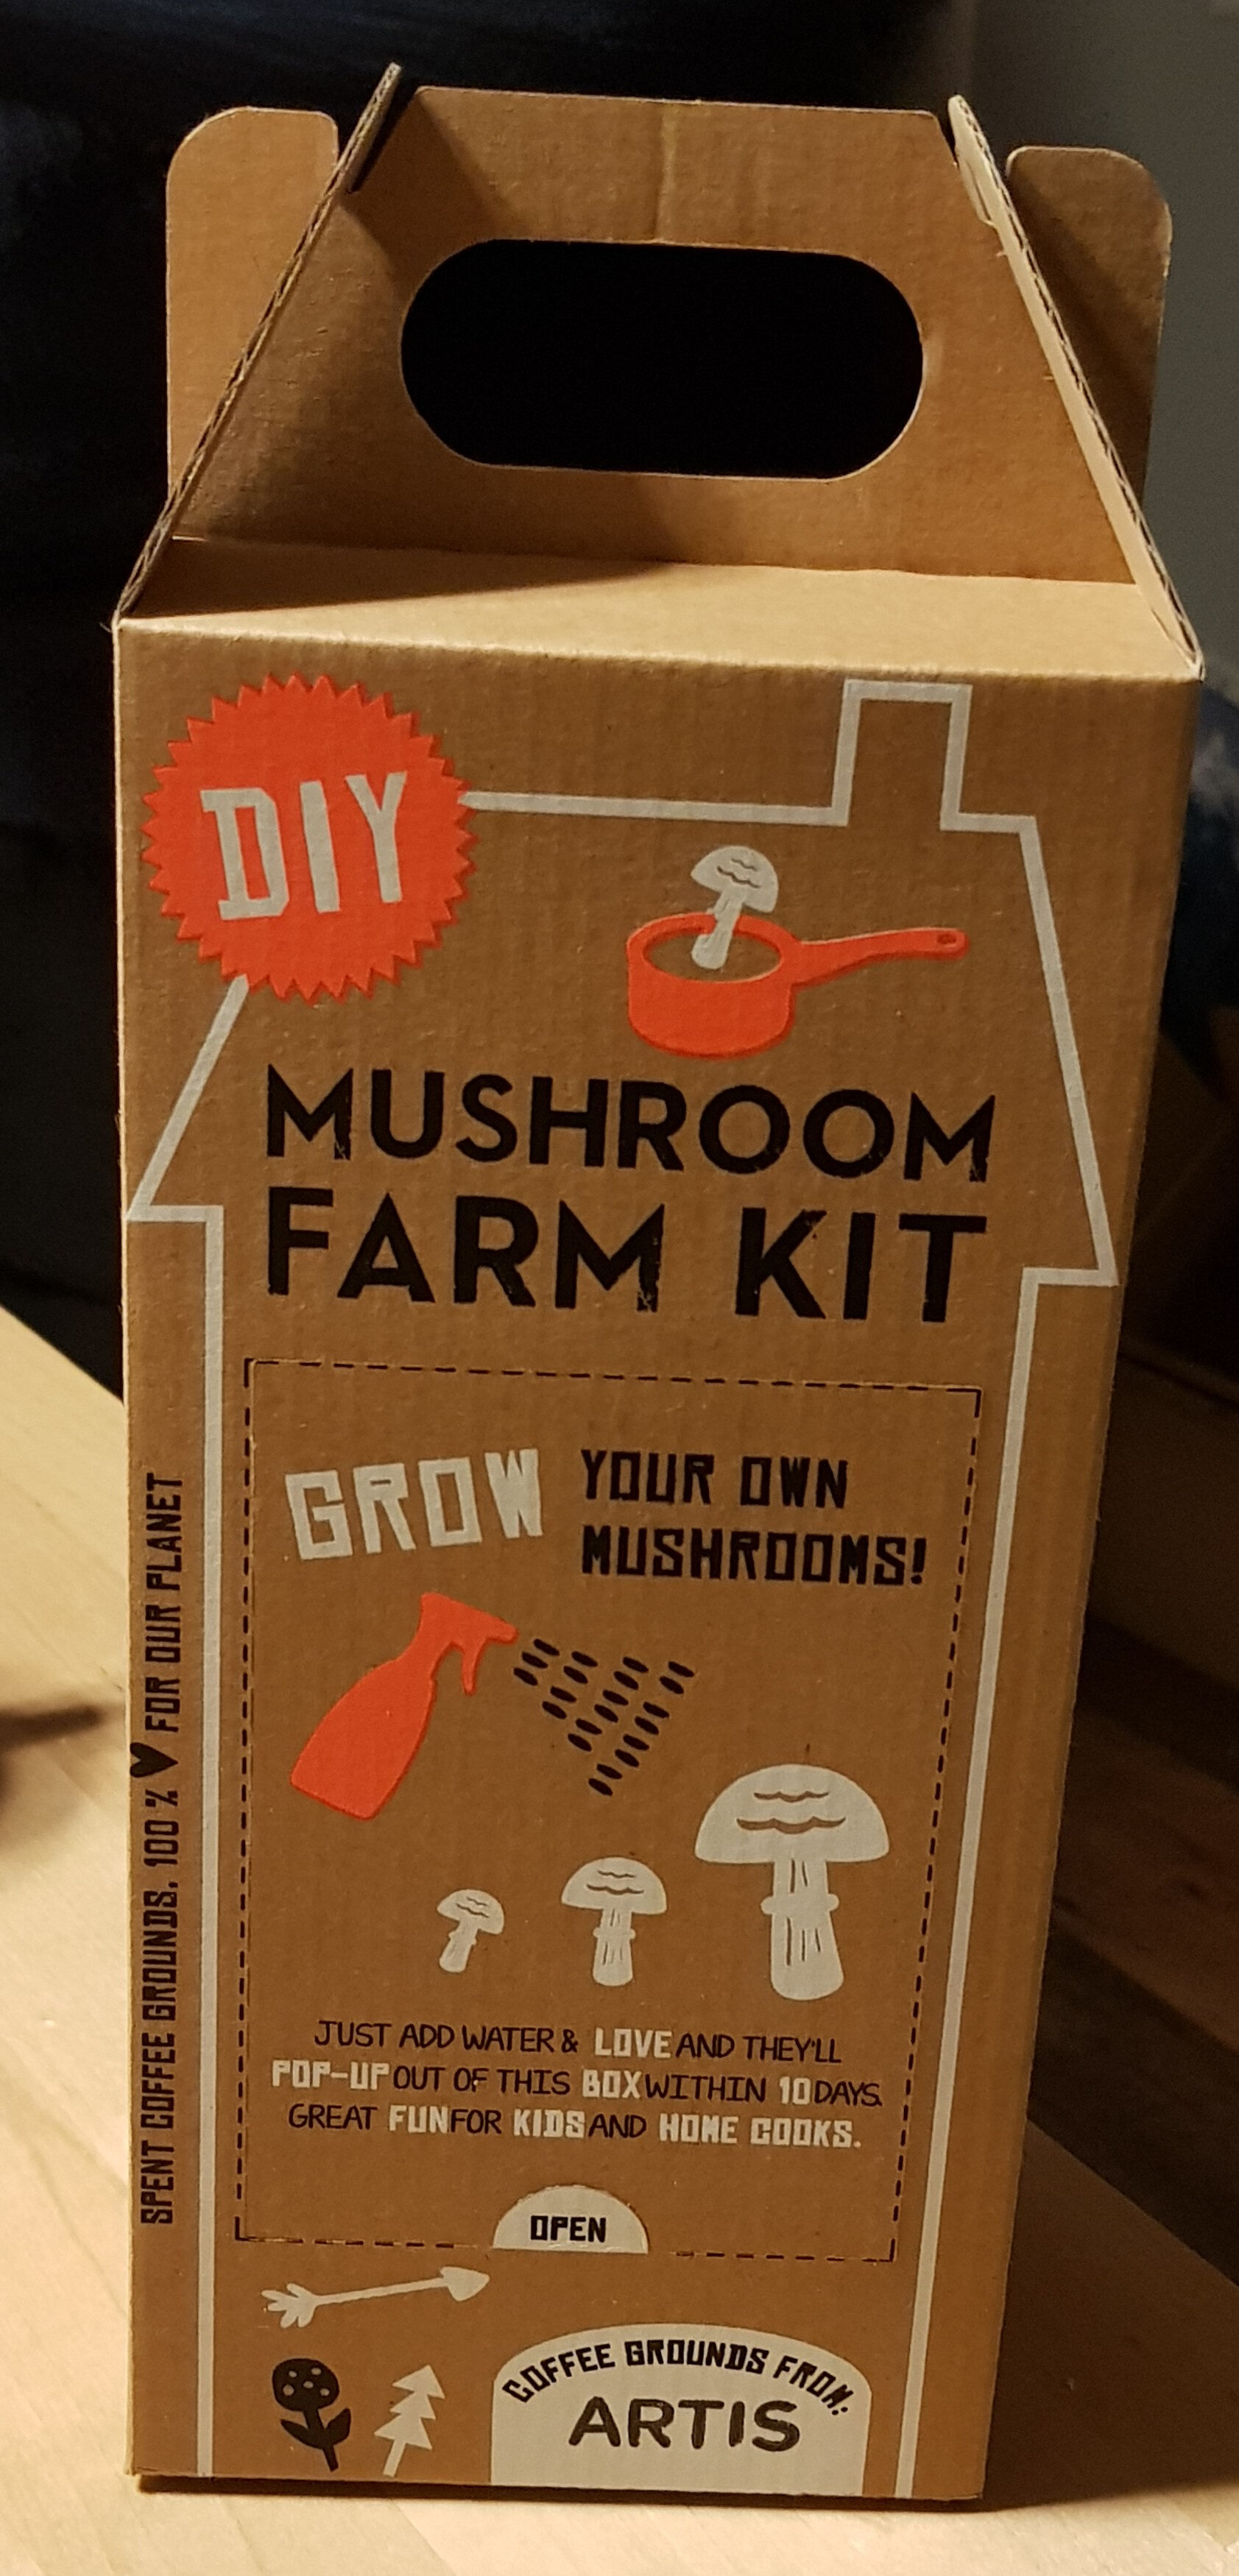 Mushroom farm kit - Product - en